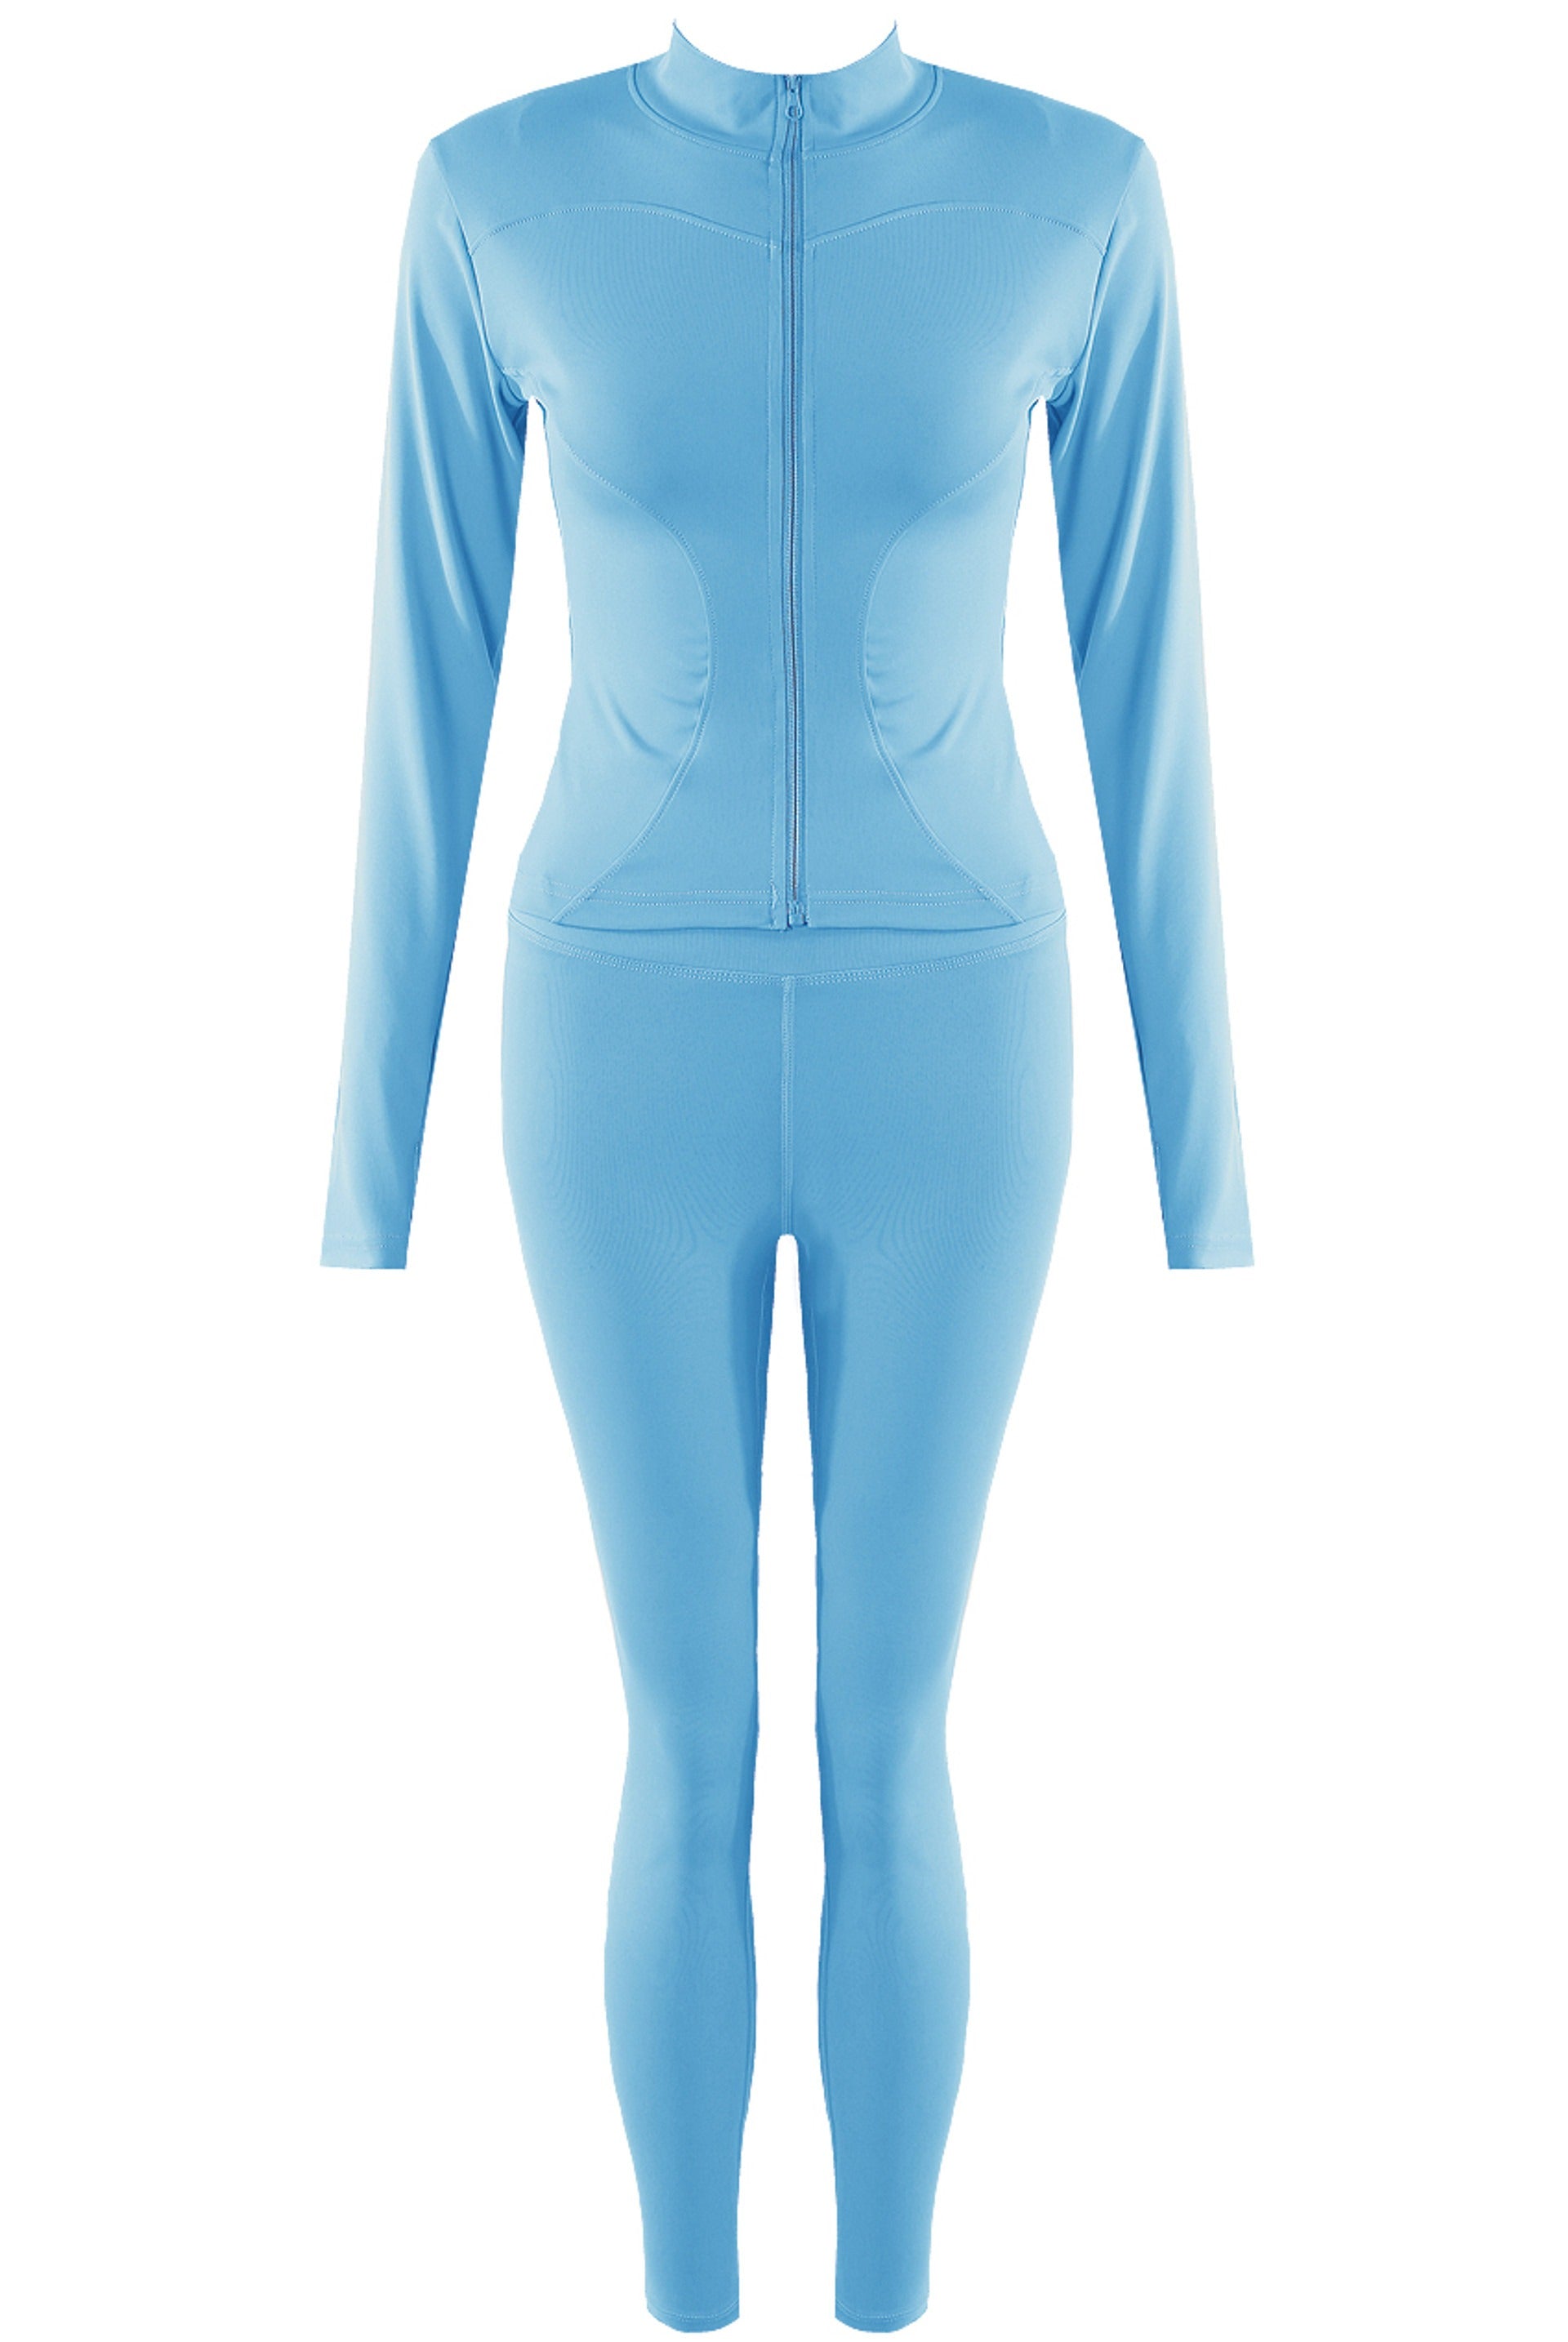 Blue Zip Long Sleeve Top And Legging Energy Gym Set - Sadie - Storm Desire